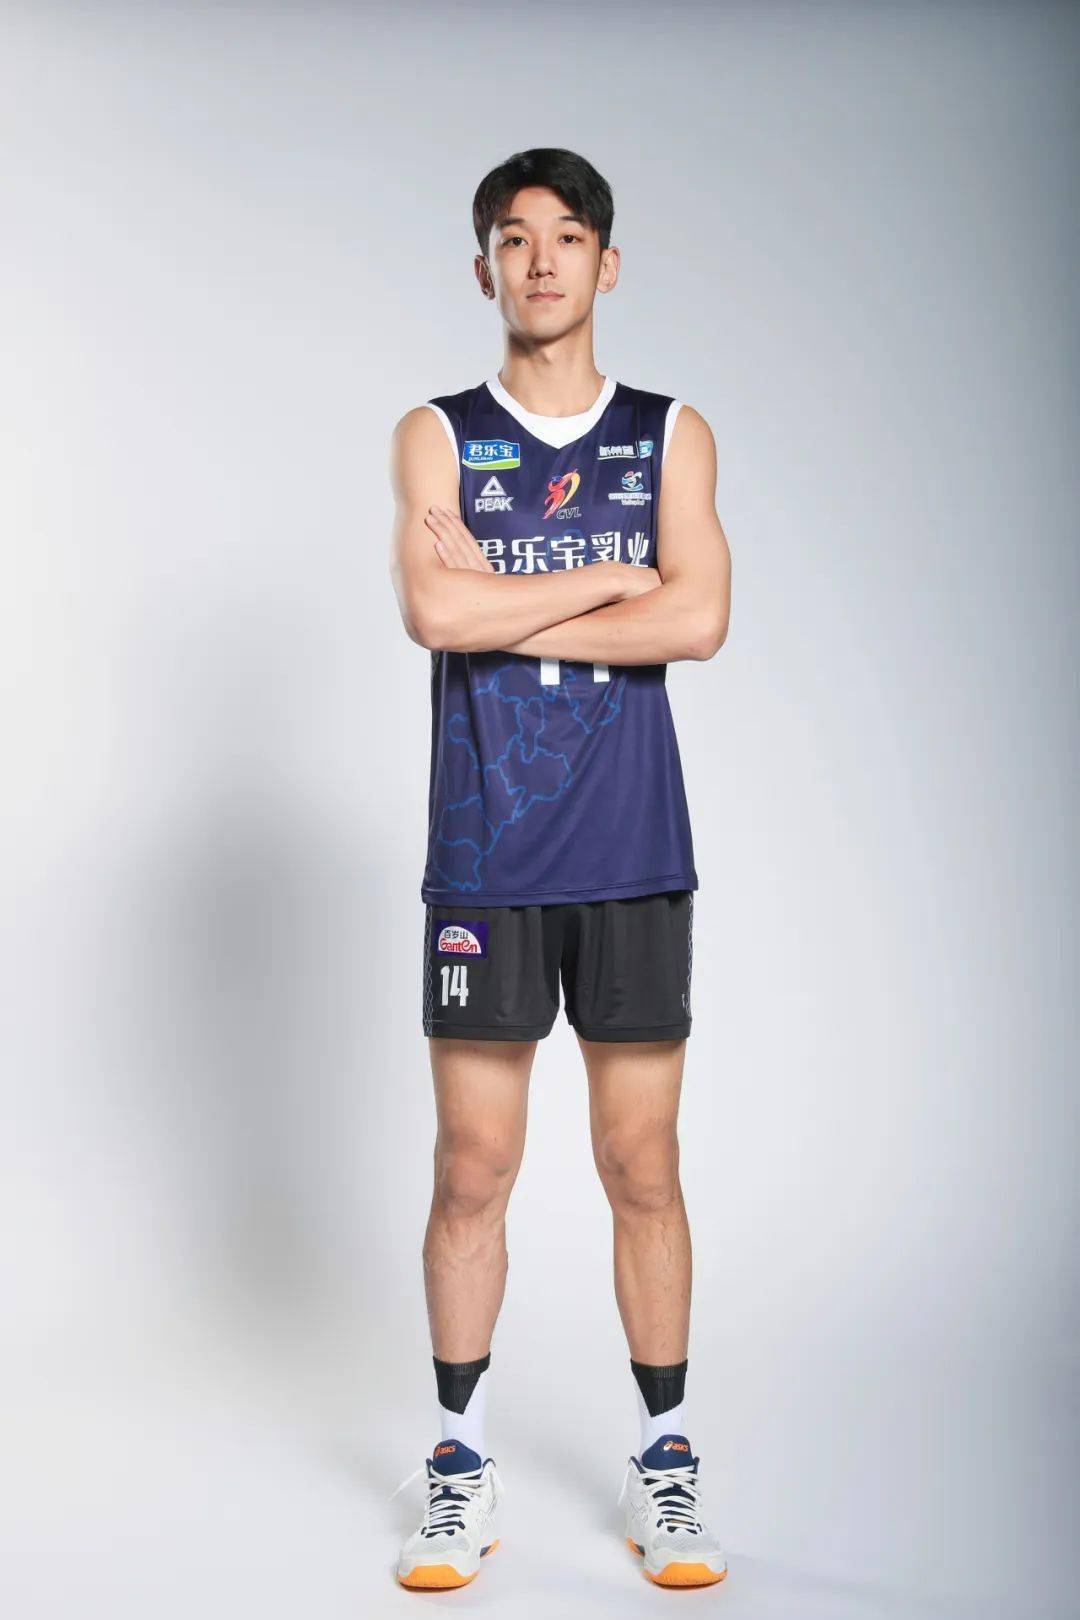 年入选中国男排二队2018年u21男子排球冠军赛第一名2016年入选河北